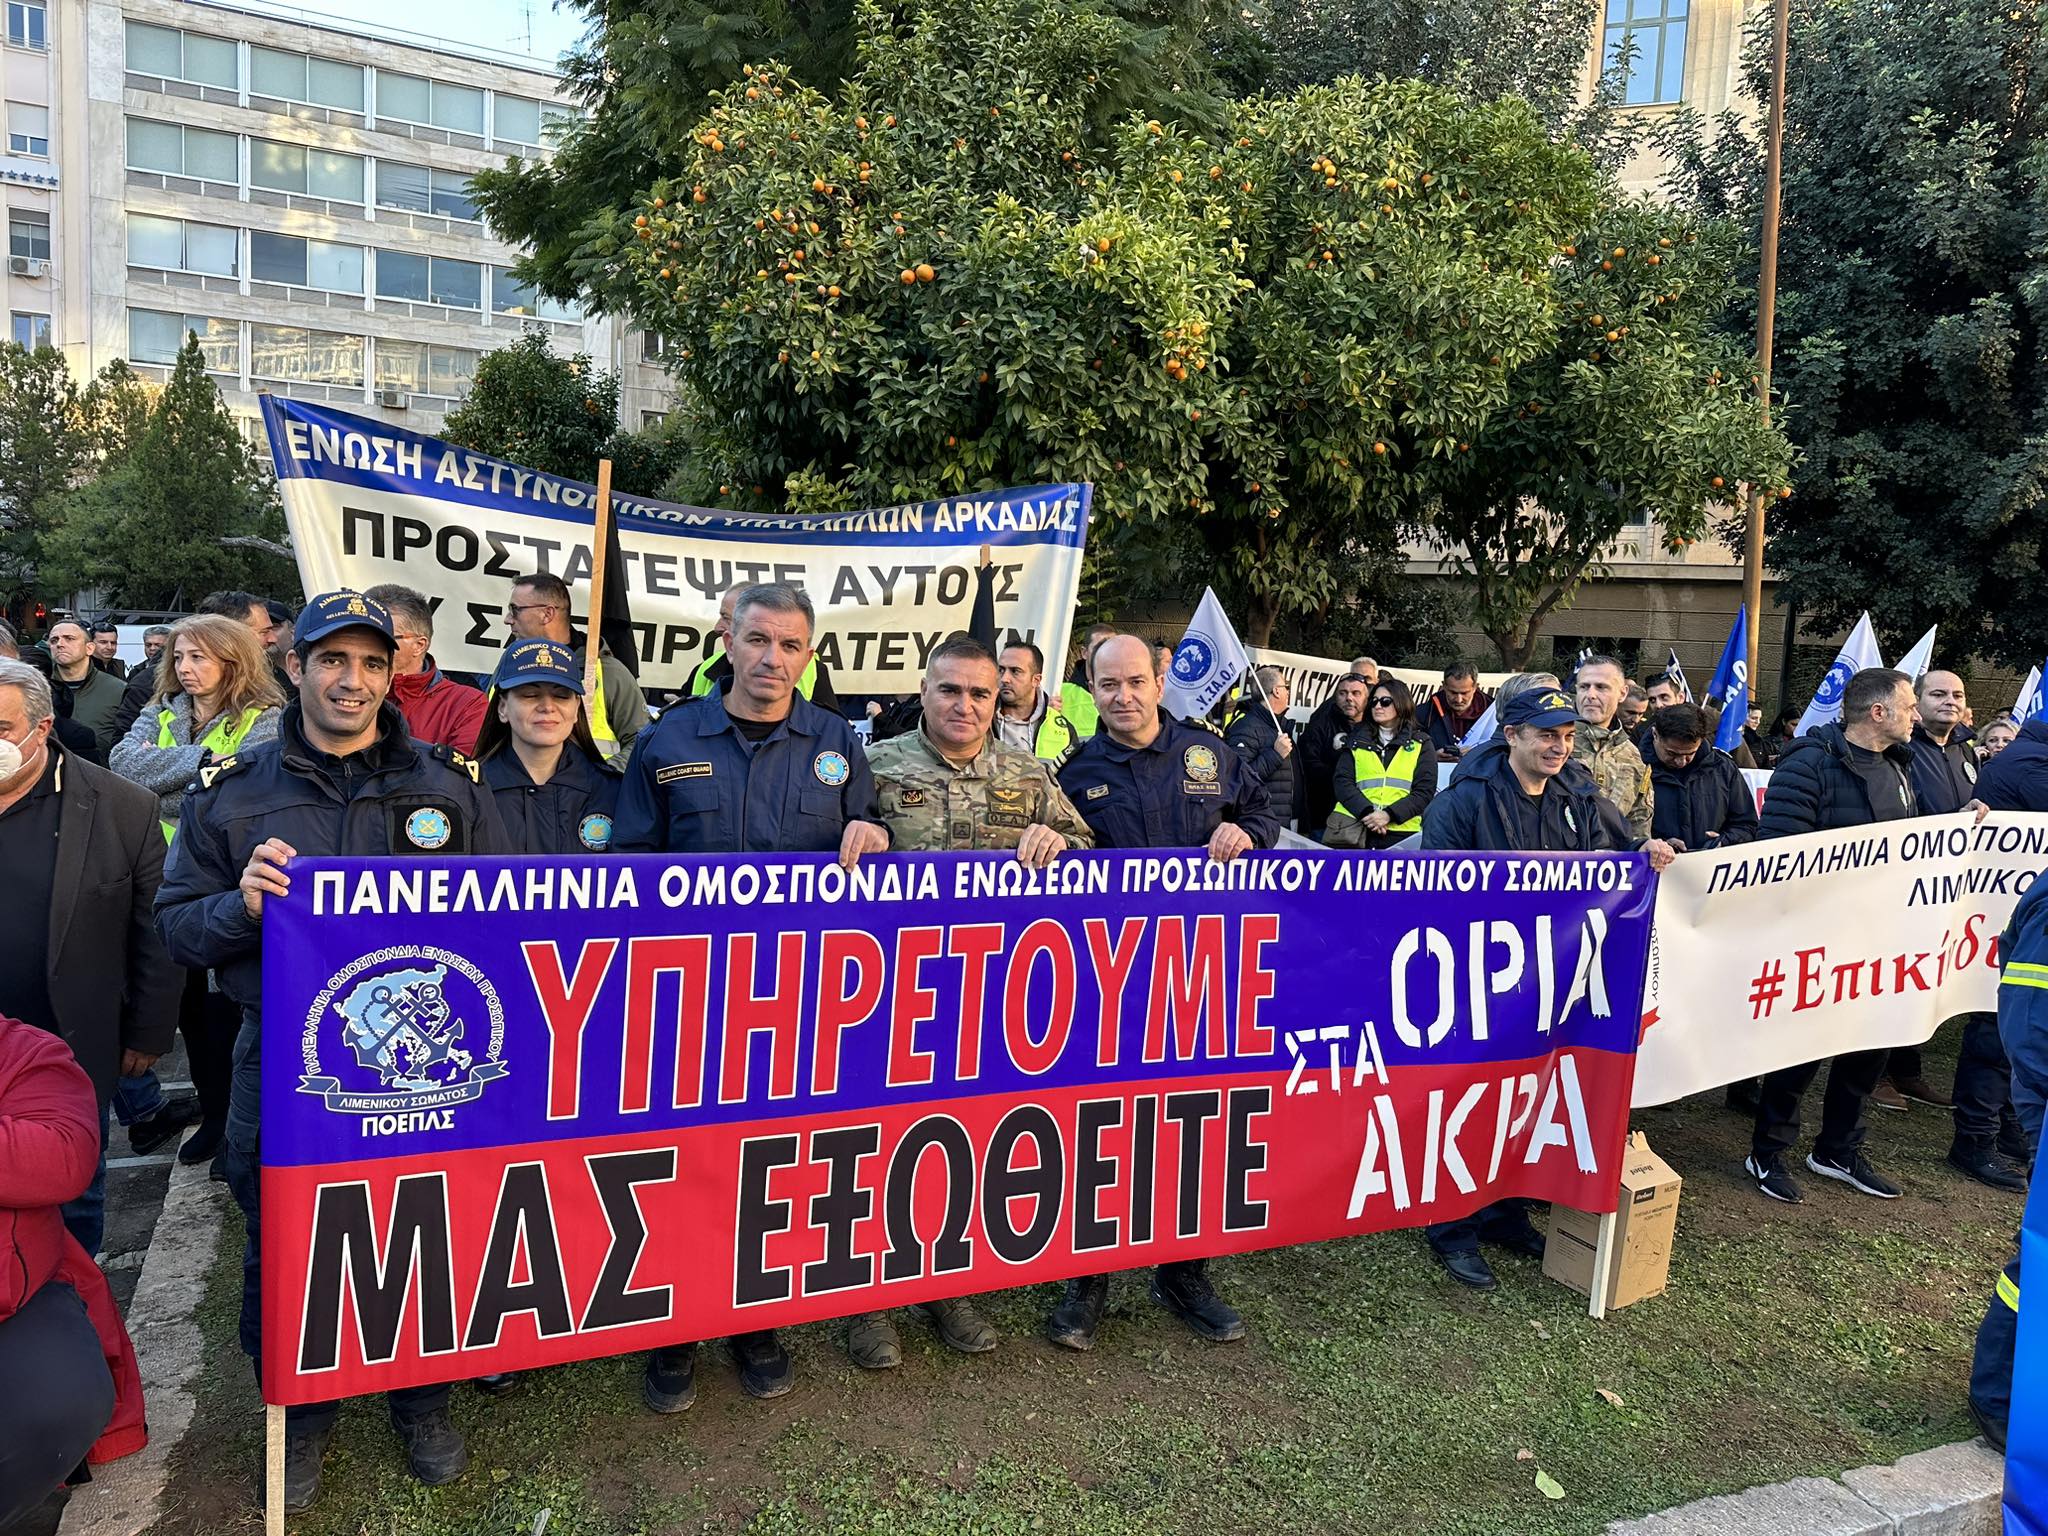 Δυναμικη παρουσία της Κρήτης στην πανελλήνια διαμαρτυρία ενστόλων στην Αθήνα 